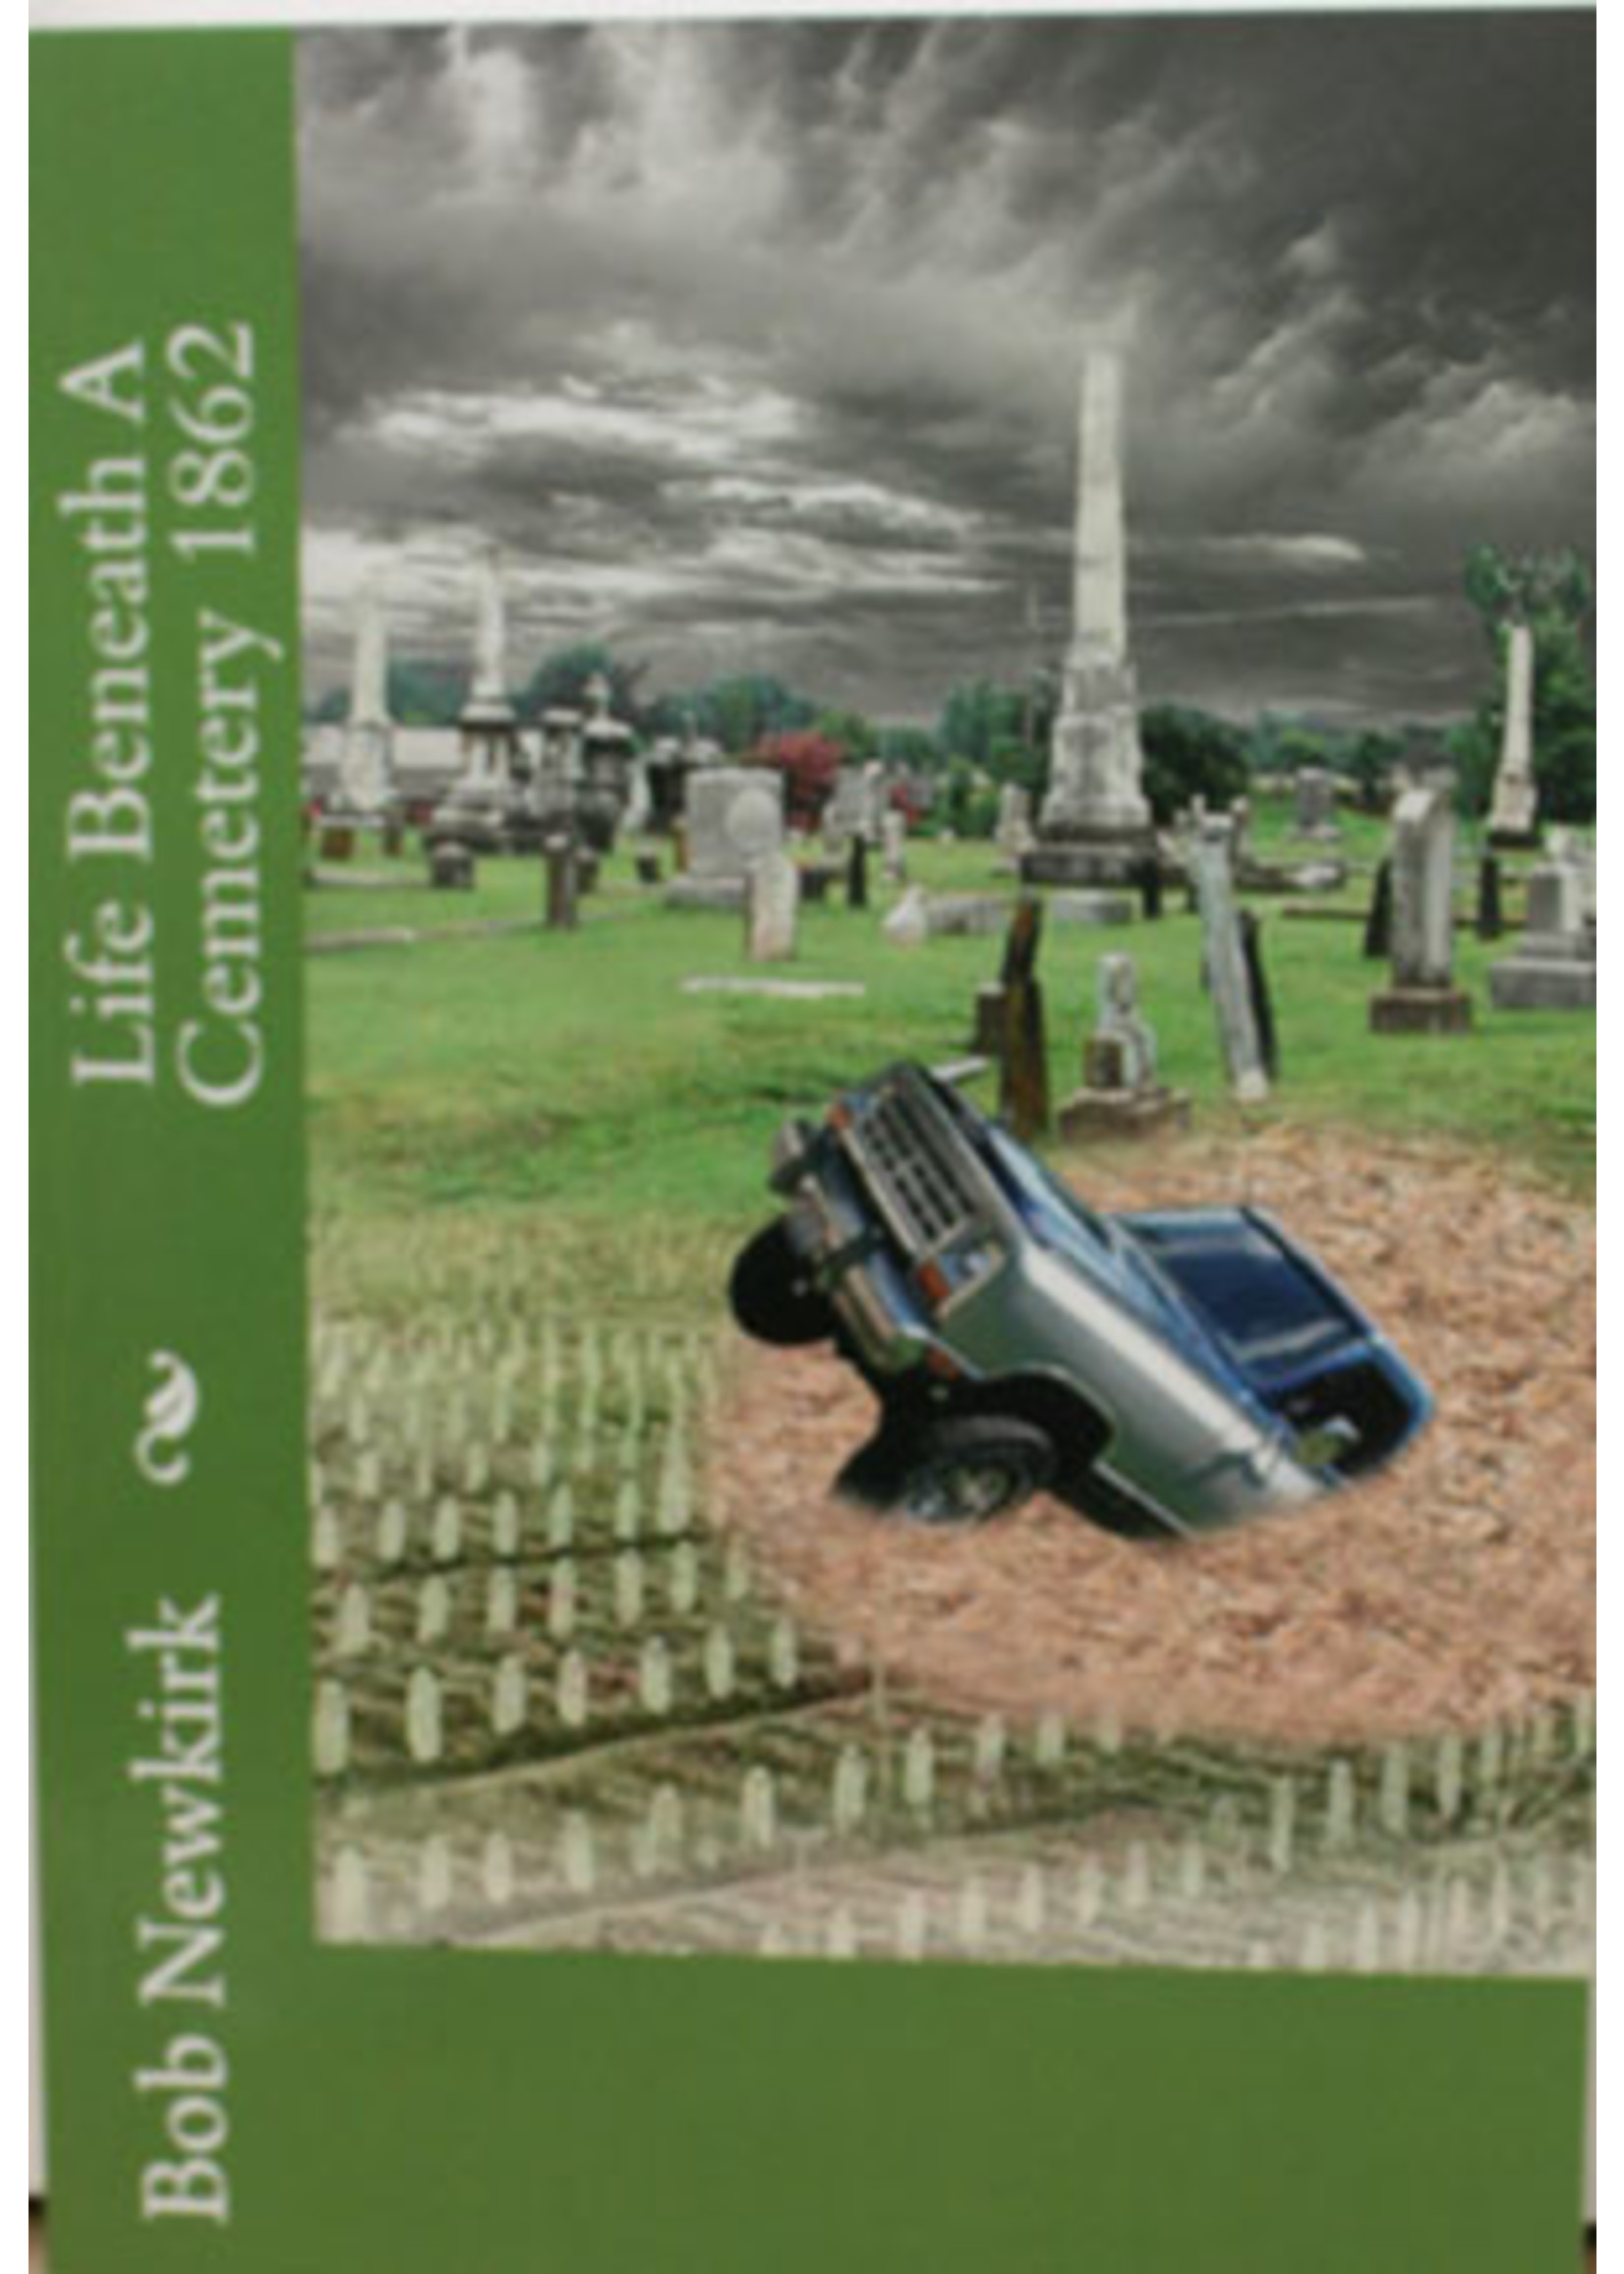 Book - Life Beneath A Cemetery